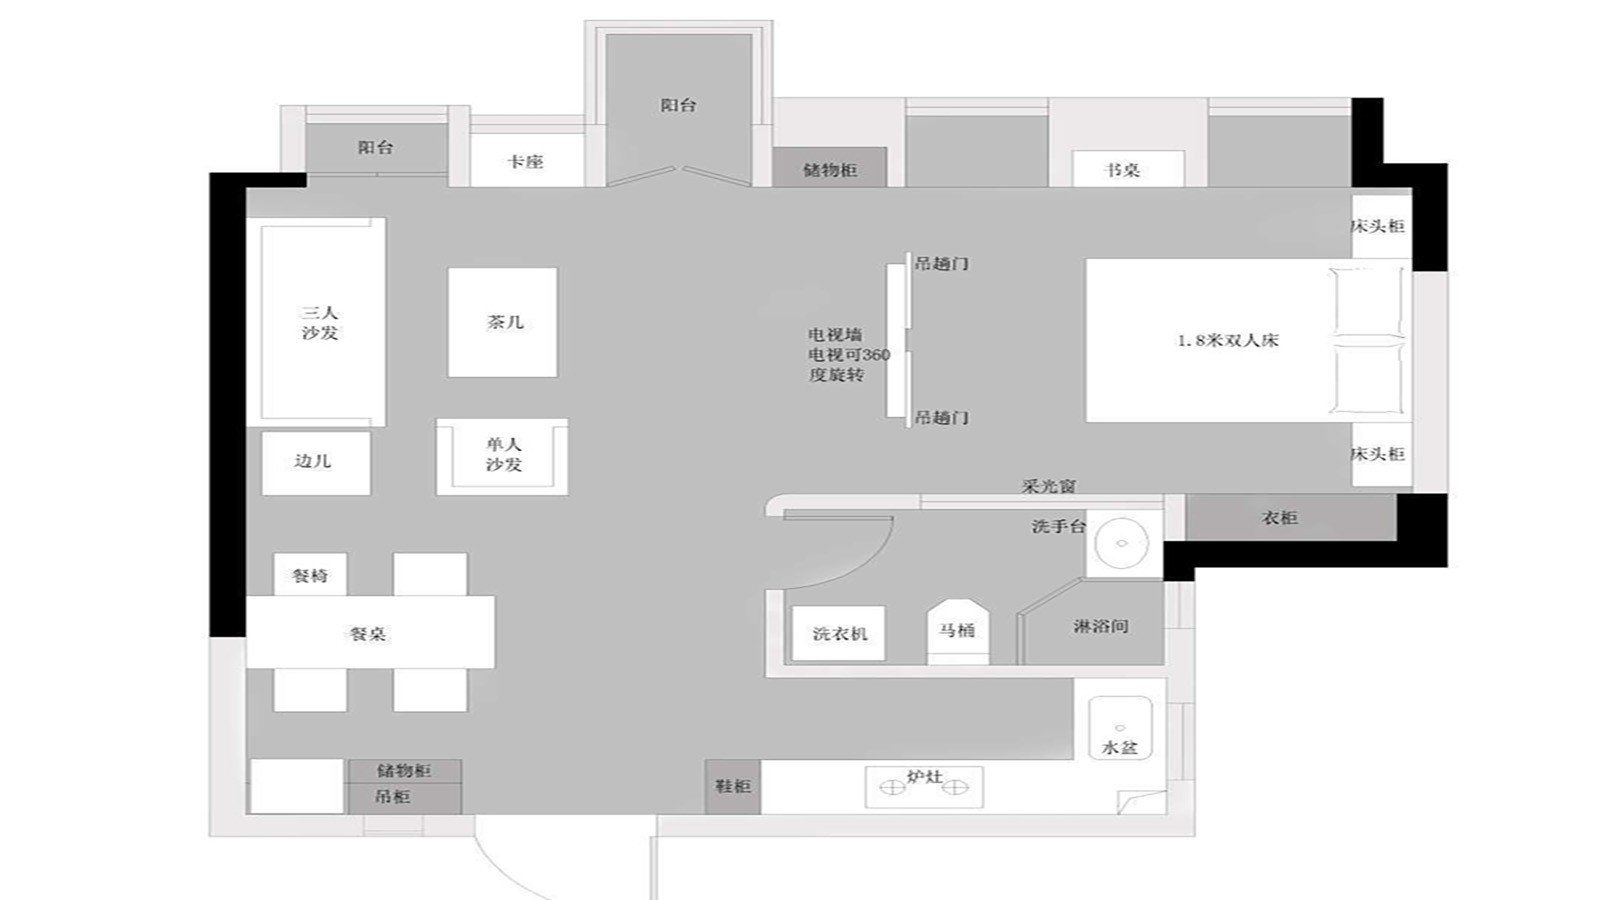 109现代三房装修效果图,归属感与幸福感的家装修案例效果图-美广网(图1)